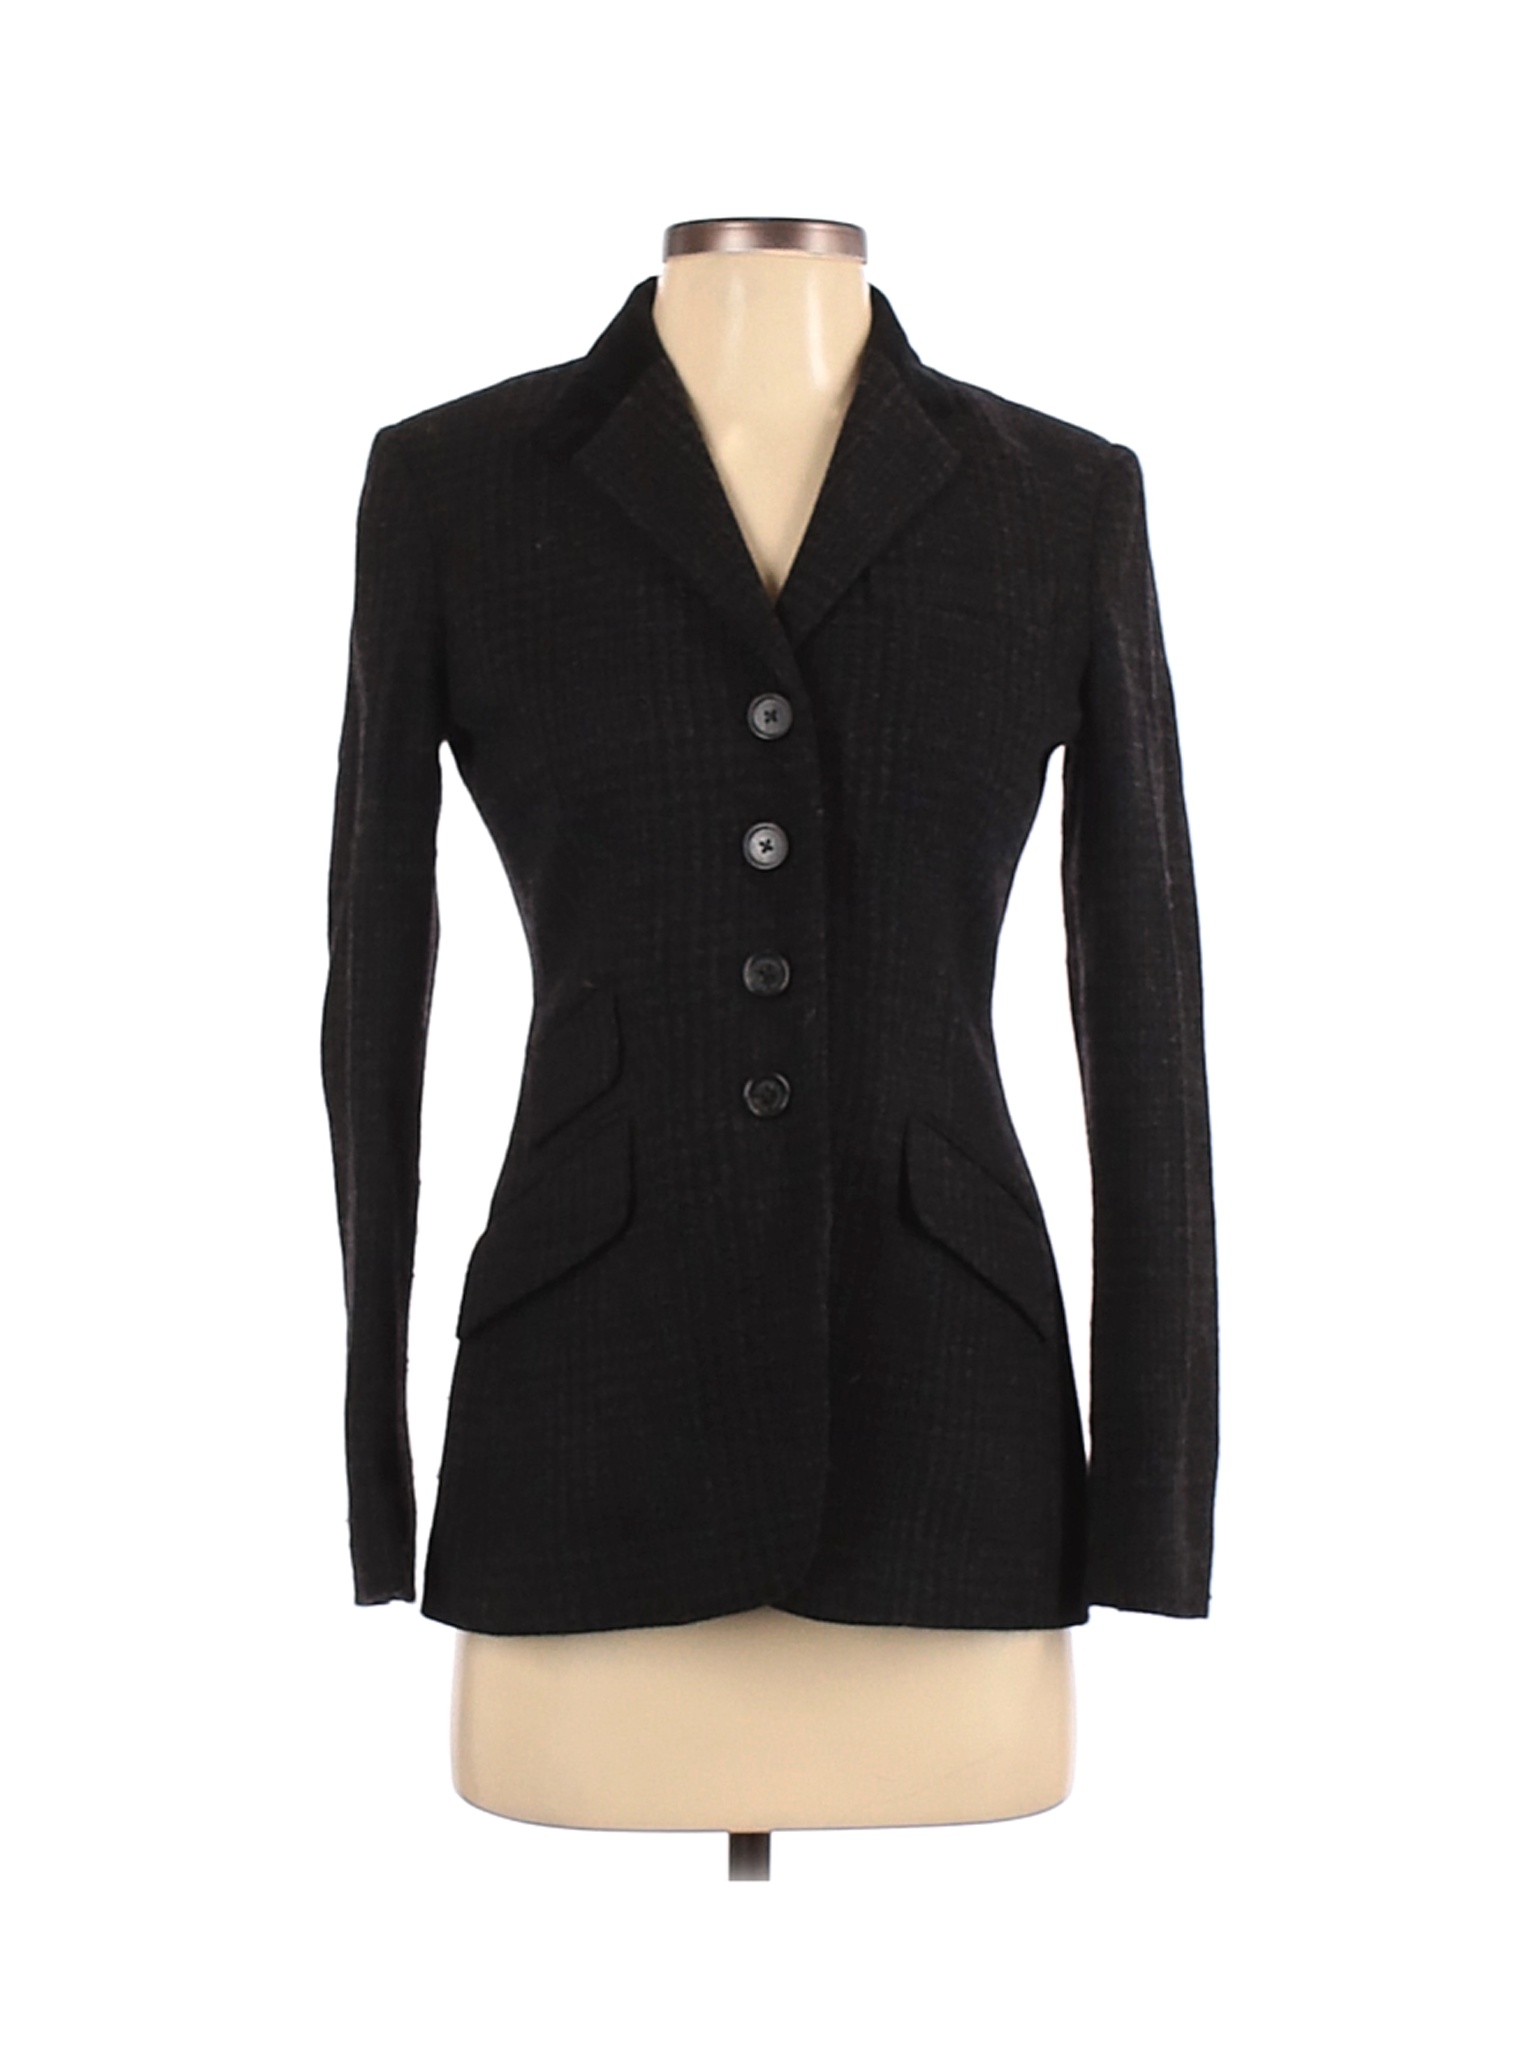 Lauren by Ralph Lauren Women Black Wool Blazer 2 Petites | eBay